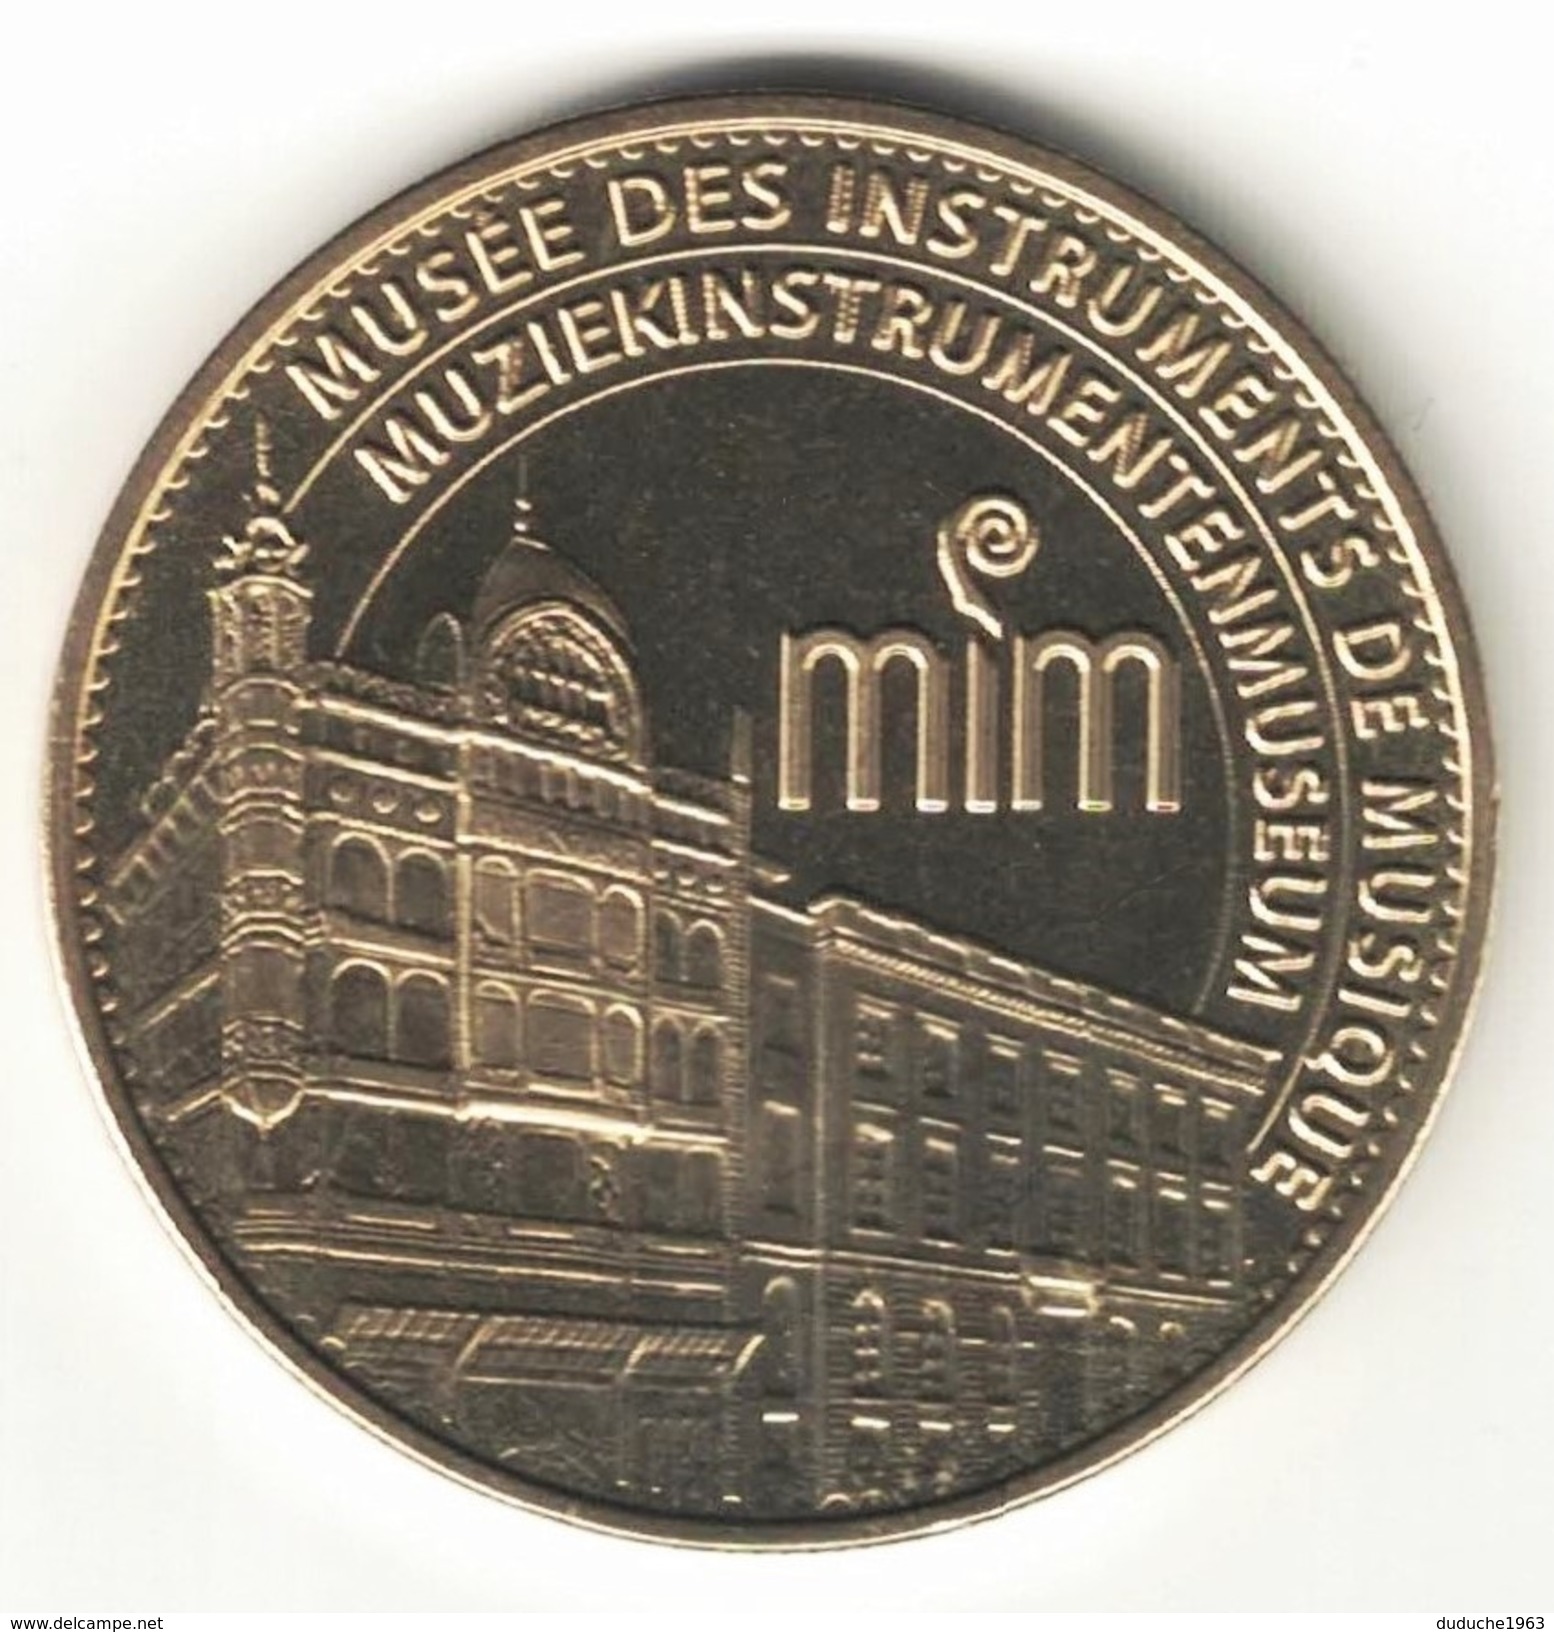 Medaille Arthus Bertrand. Belgique - Musée Des Instruments De Musique 2007. Neuve - 2007